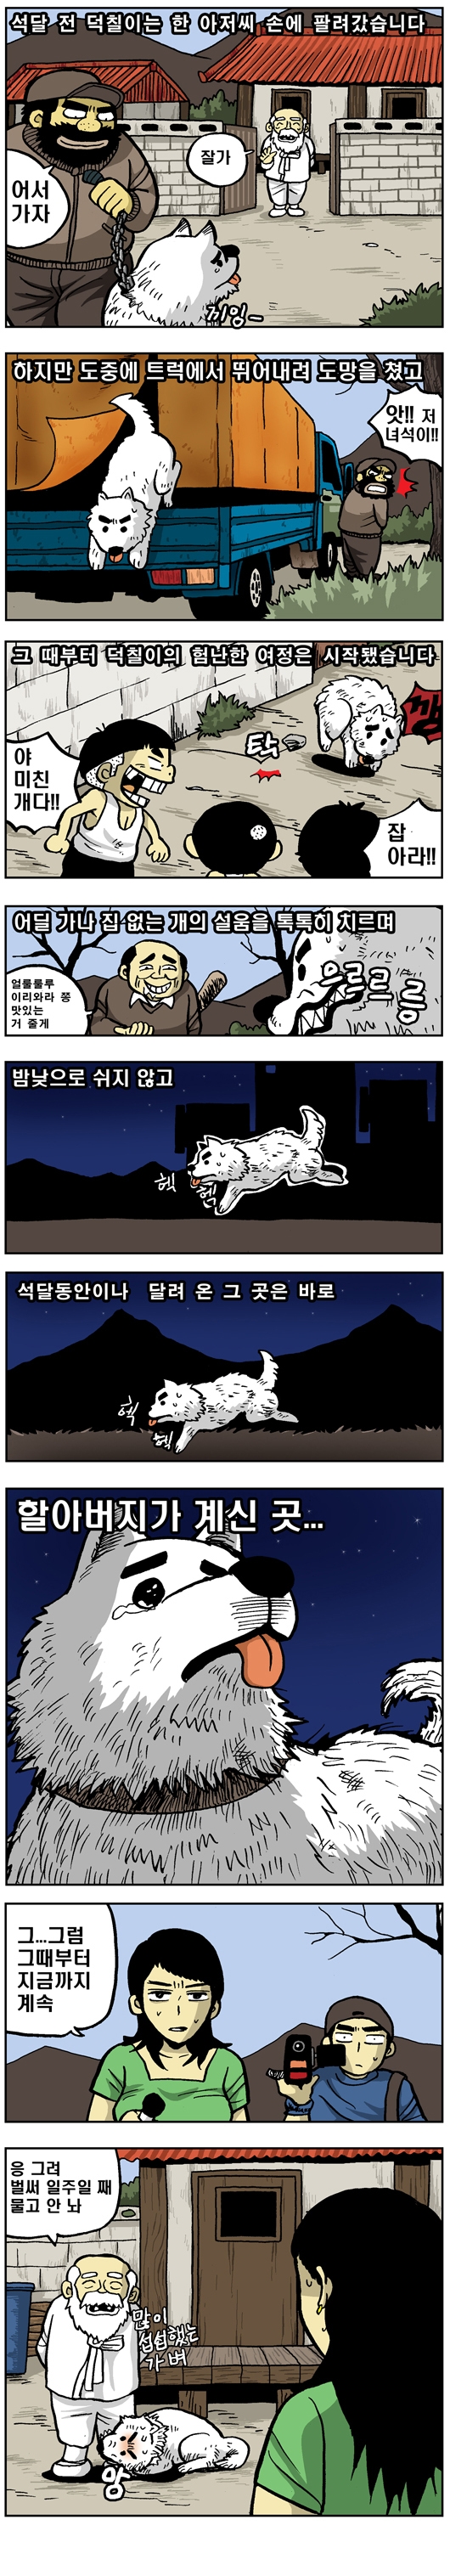 한국의 명견 진돗개